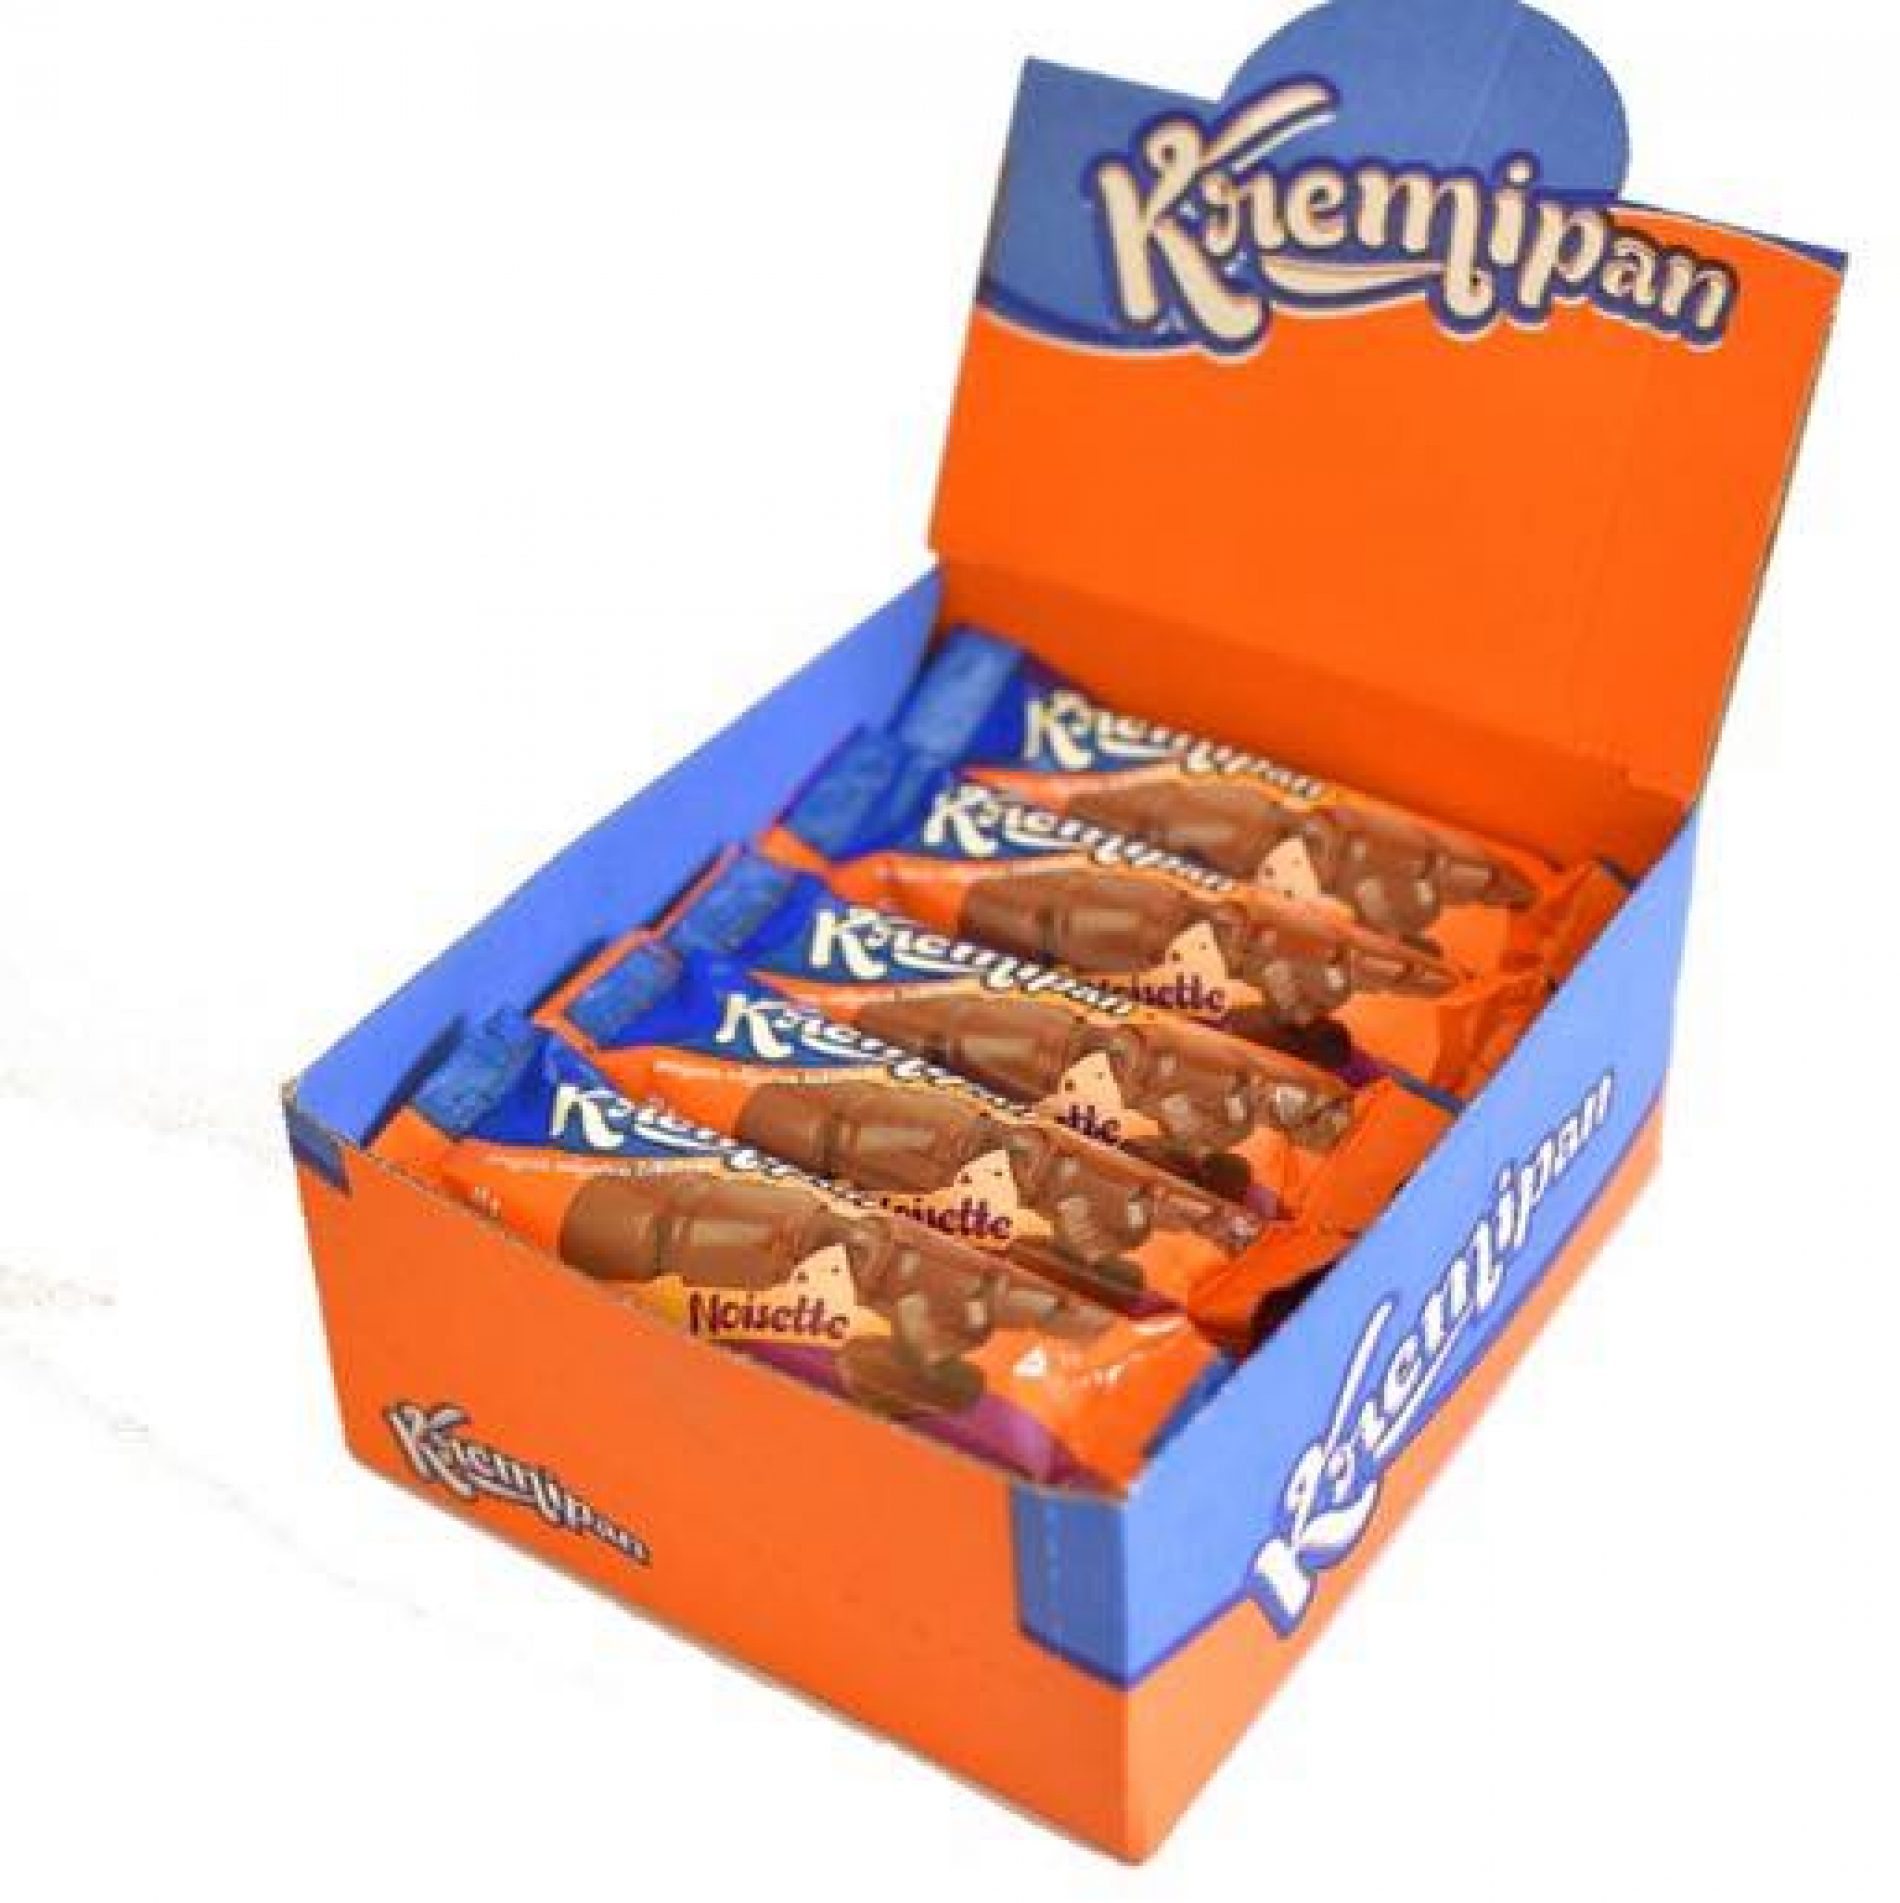 AC Food oživio nekada popularnu čokoladicu: ‘Kremipan’ u novom i poboljšanom izdanju